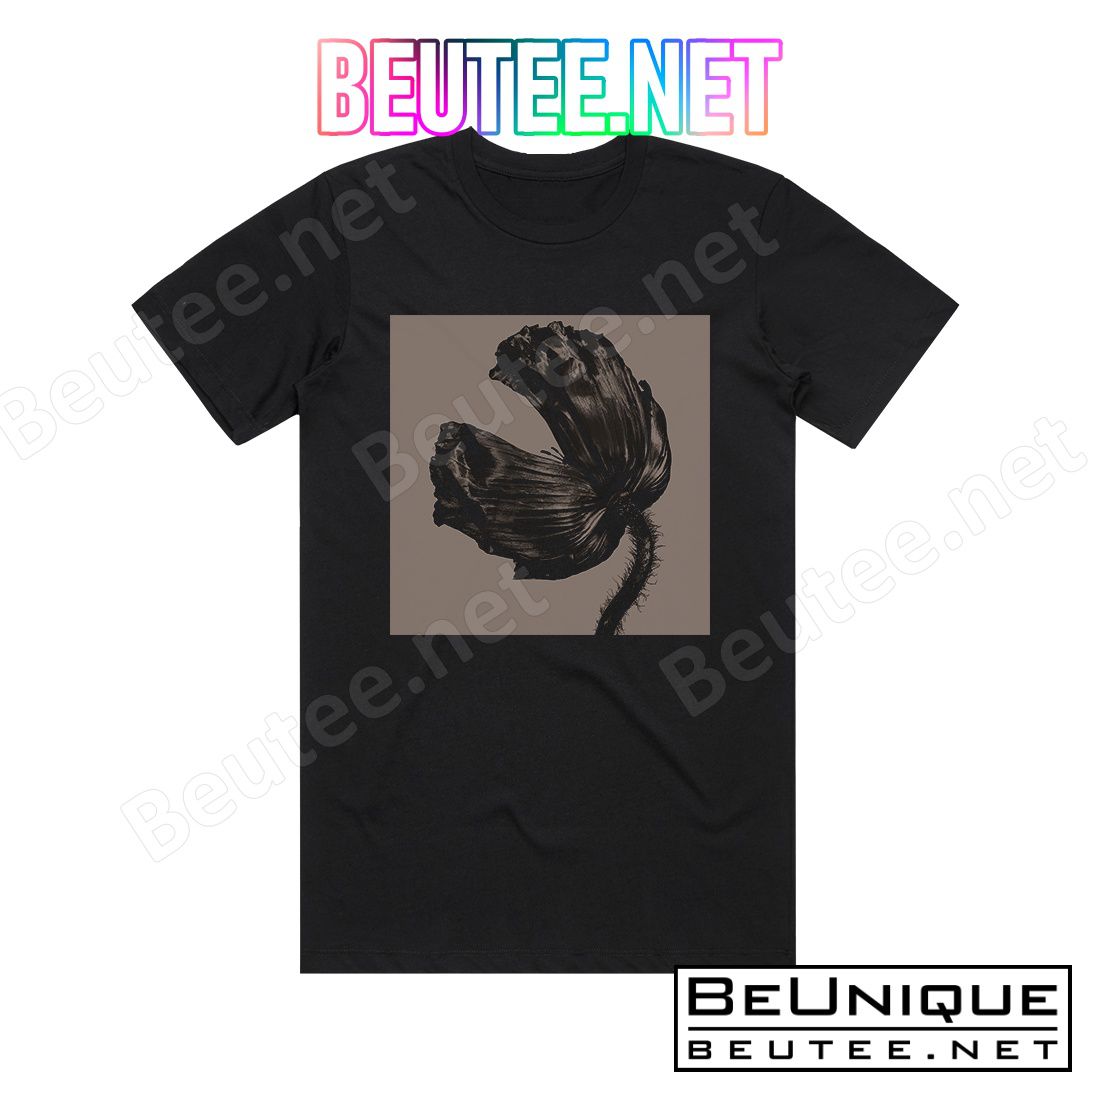 Pet Shop Boys Release 3 Album Cover T-Shirt